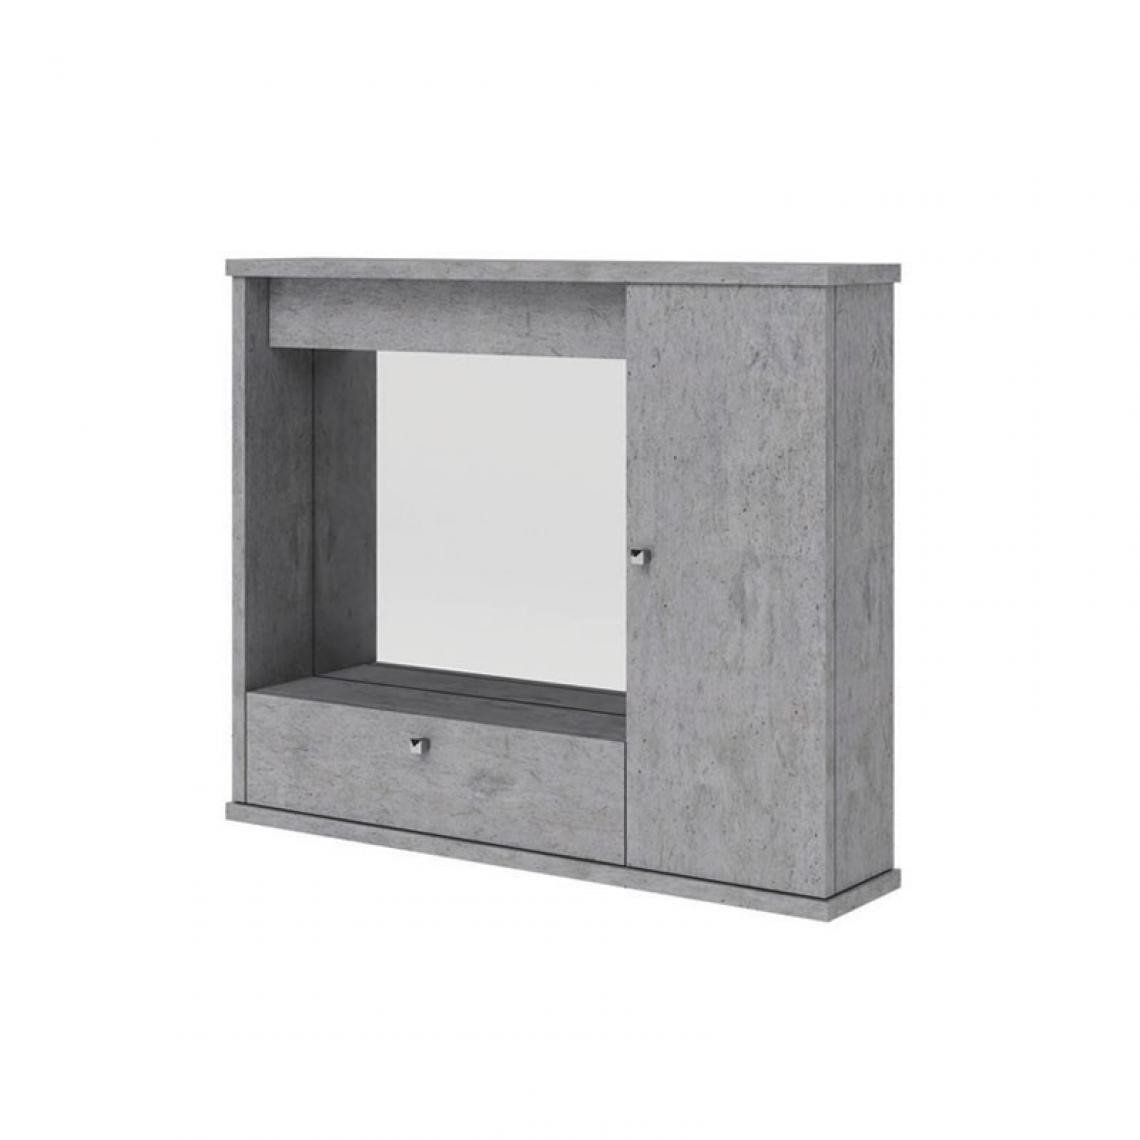 Webmarketpoint - Miroir de salle de bain gris béton meuble moderne mobile 1 porte avec abattant h.61x73x14 - Miroir de salle de bain